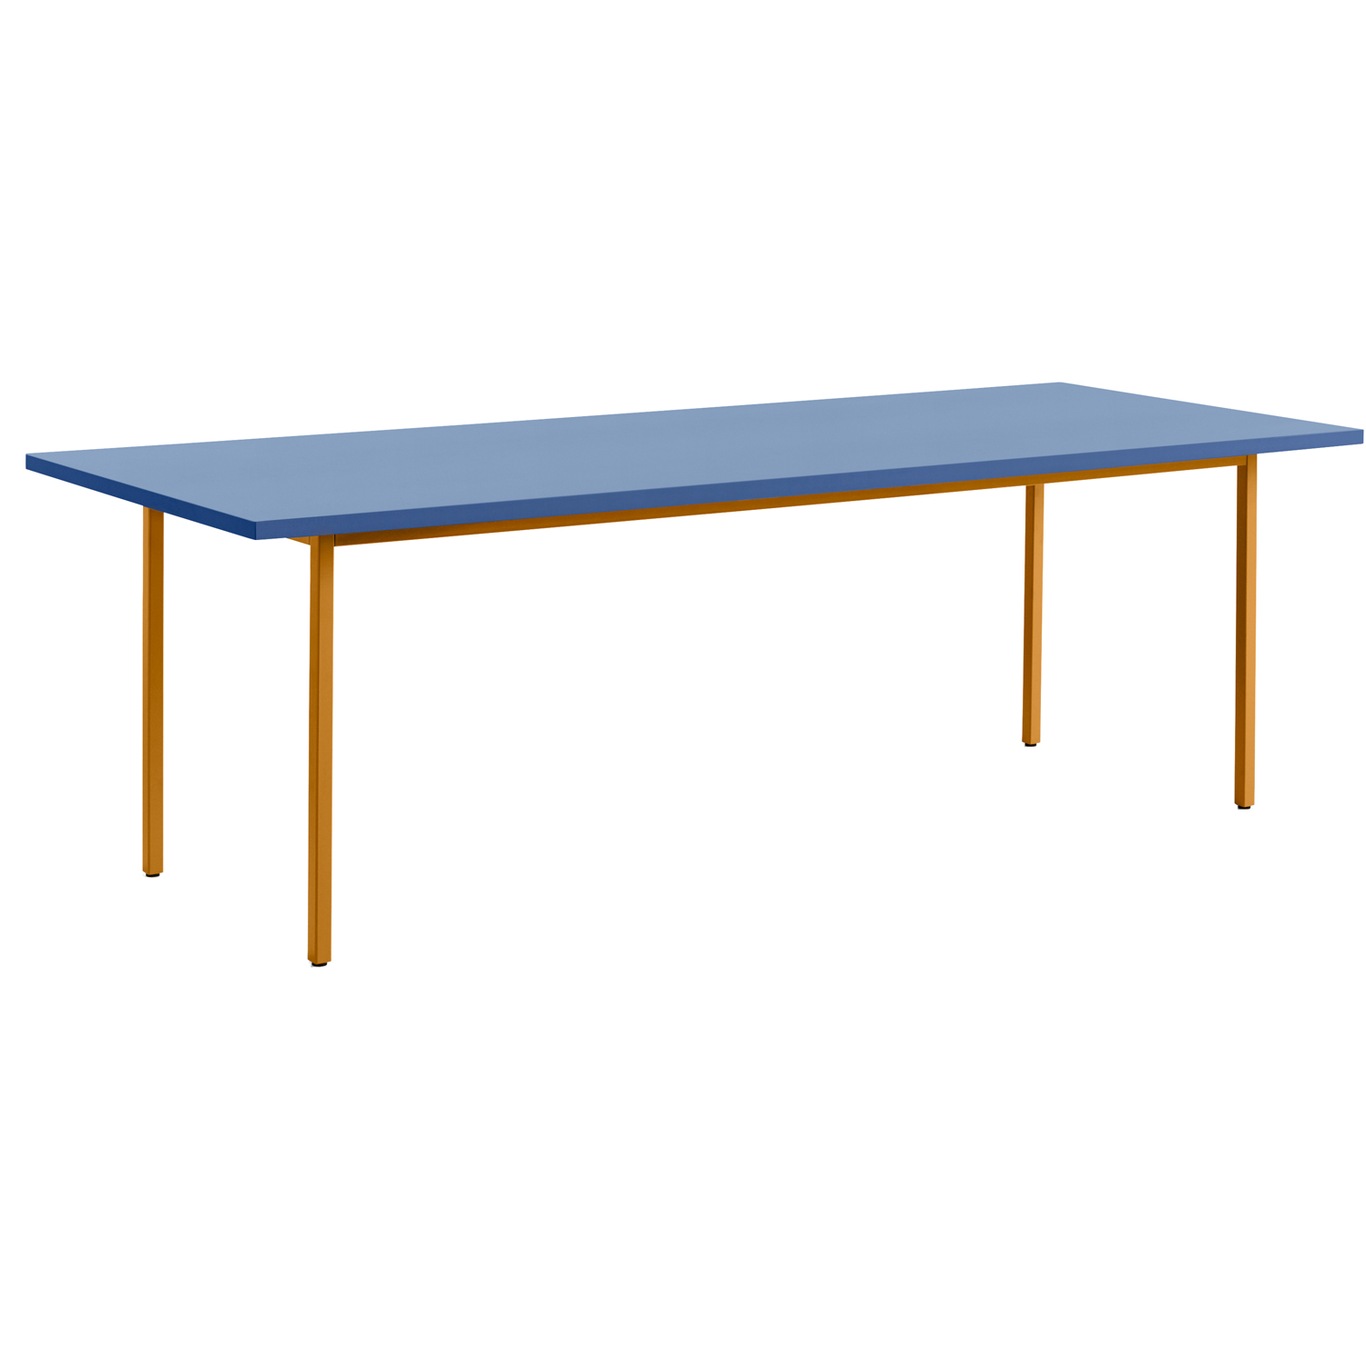 TwoColour Pöytä 240x90 cm, Ochre / Sininen